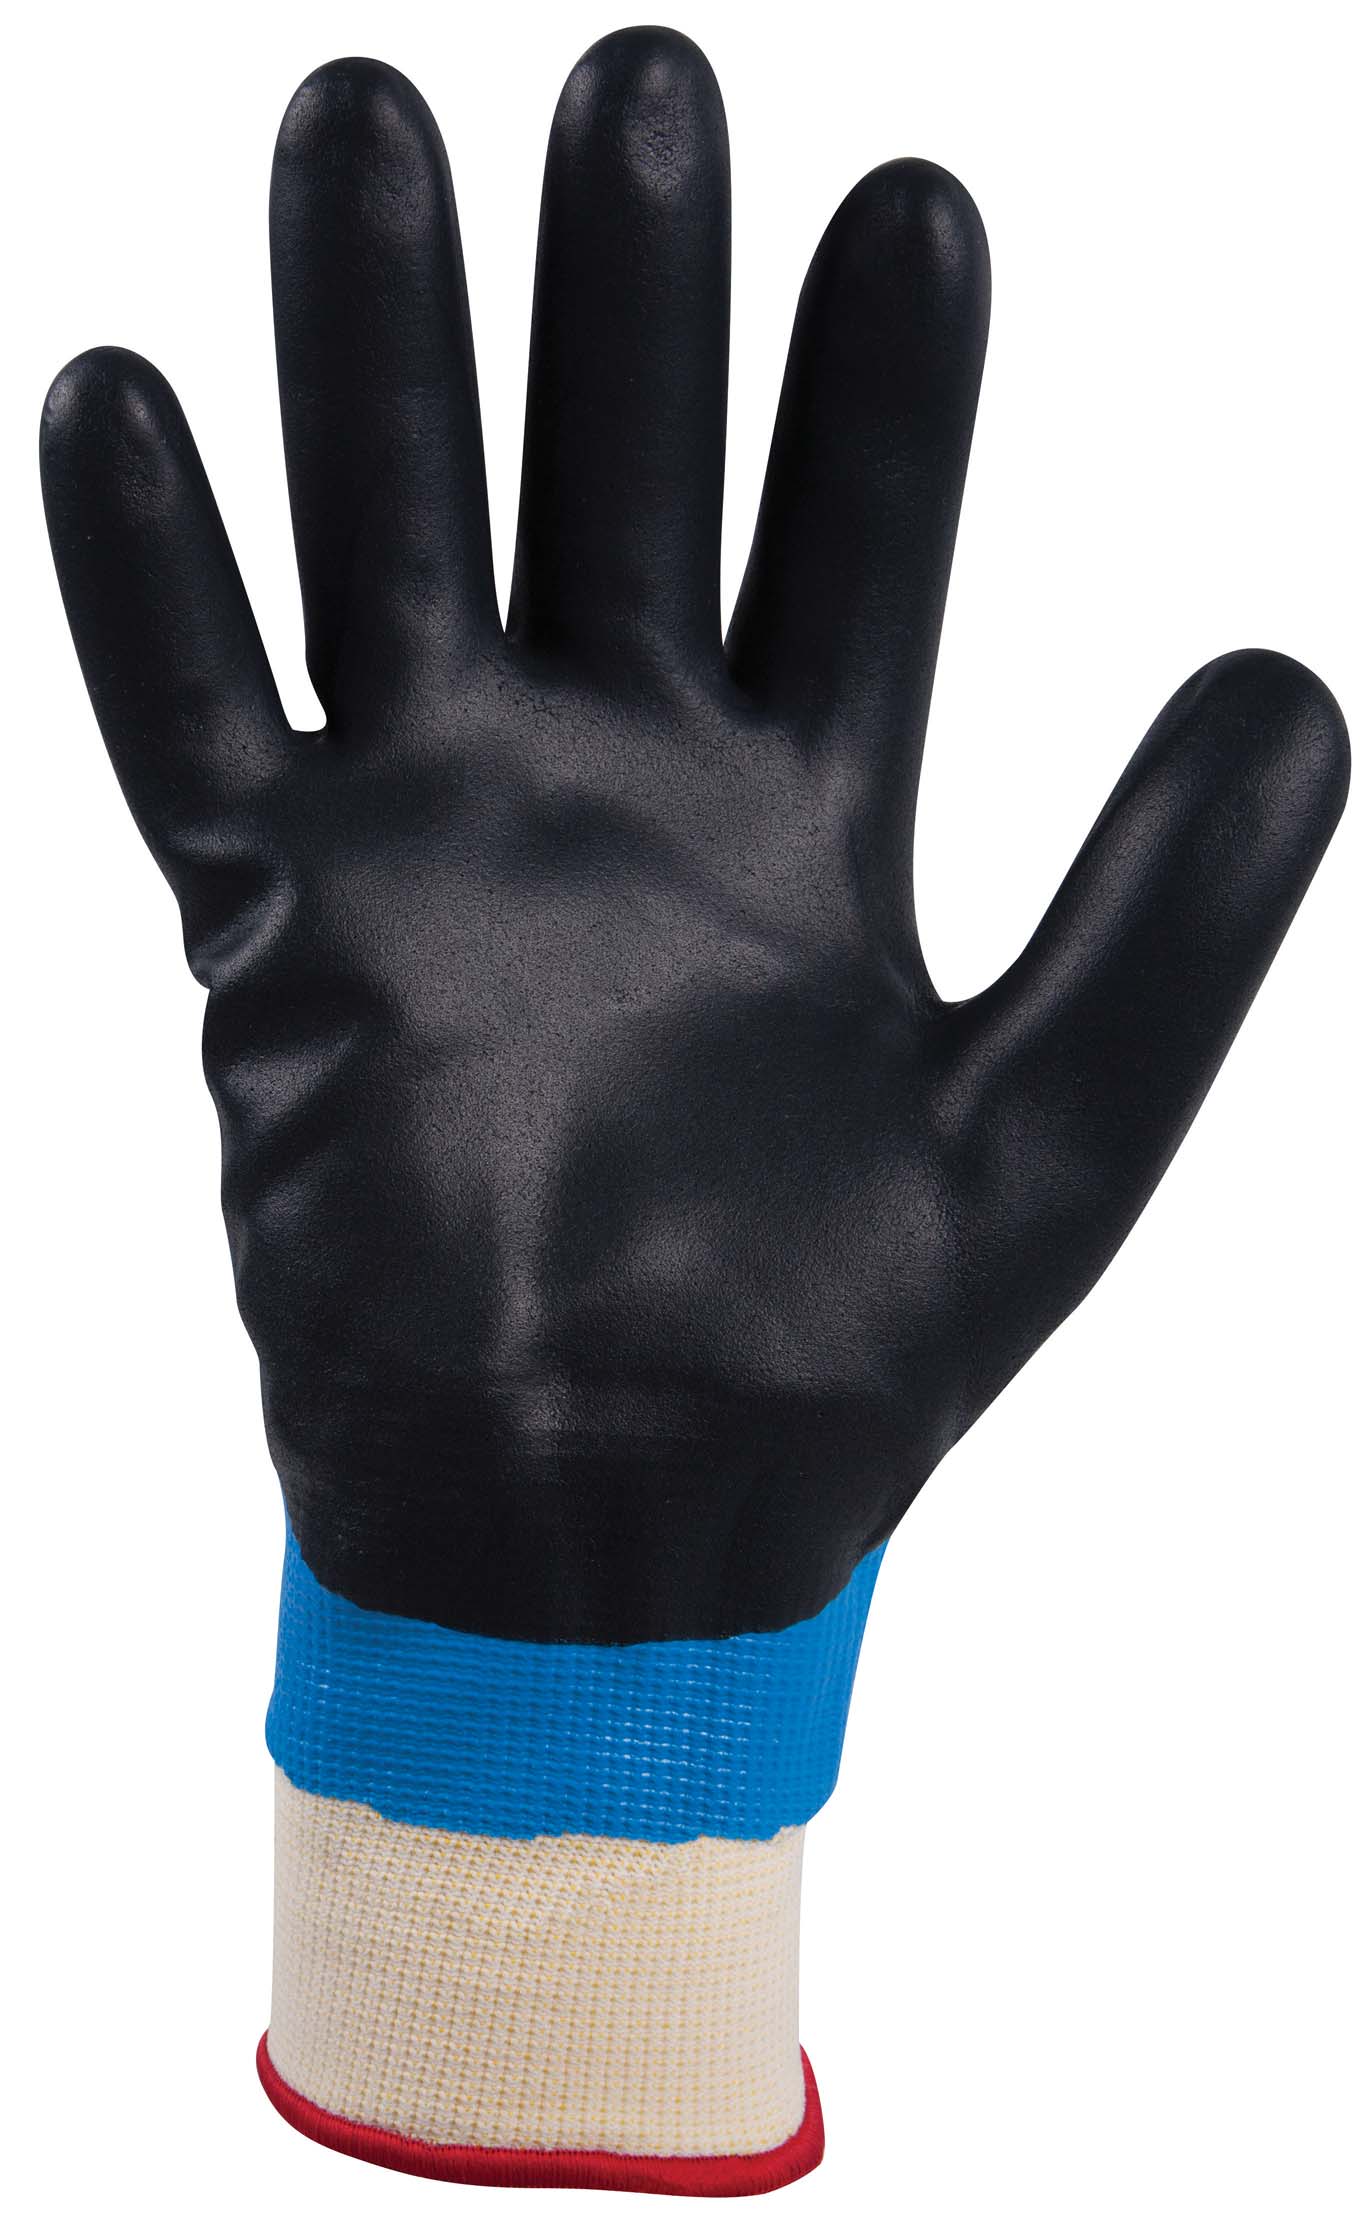 SHOWA 477 Waterproof Insulated Nitrile Foam Grip Gloves